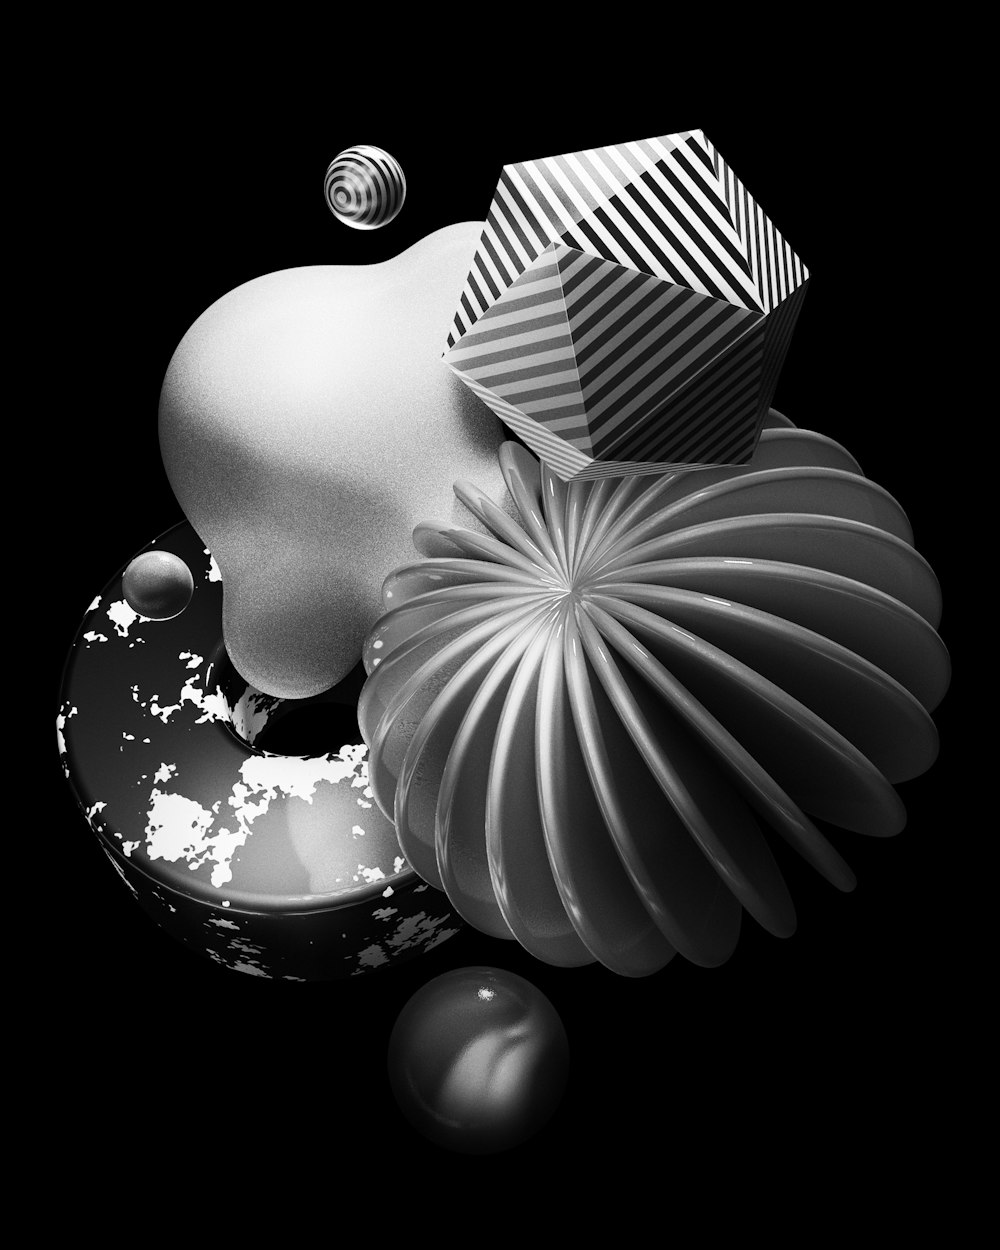 uma foto em preto e branco de um vaso e algumas bolas